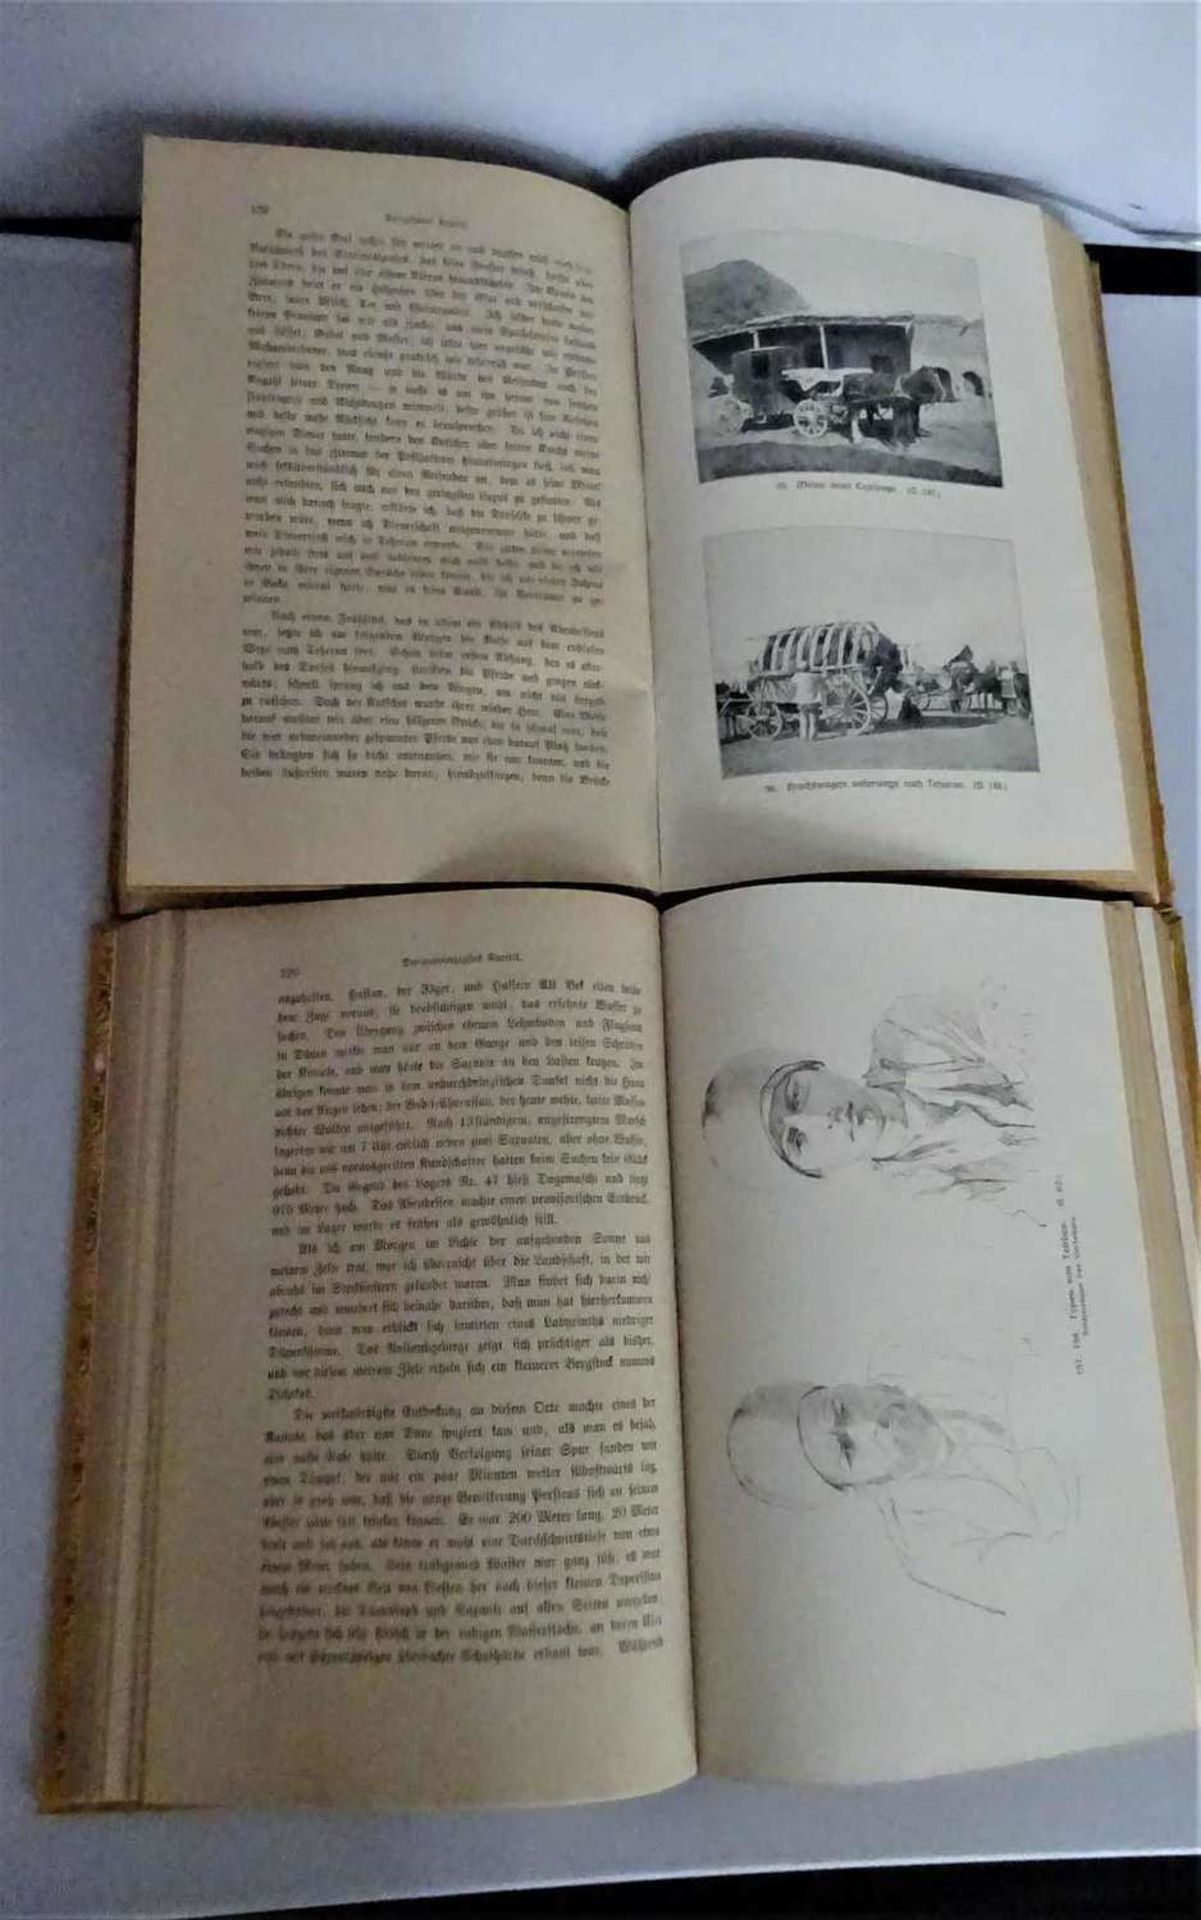 Zu Land nach Indien durch Persien, Seistan, Belutschistan von Sven Hedin, Band 1-2. Leipzig 1922 - Image 2 of 2